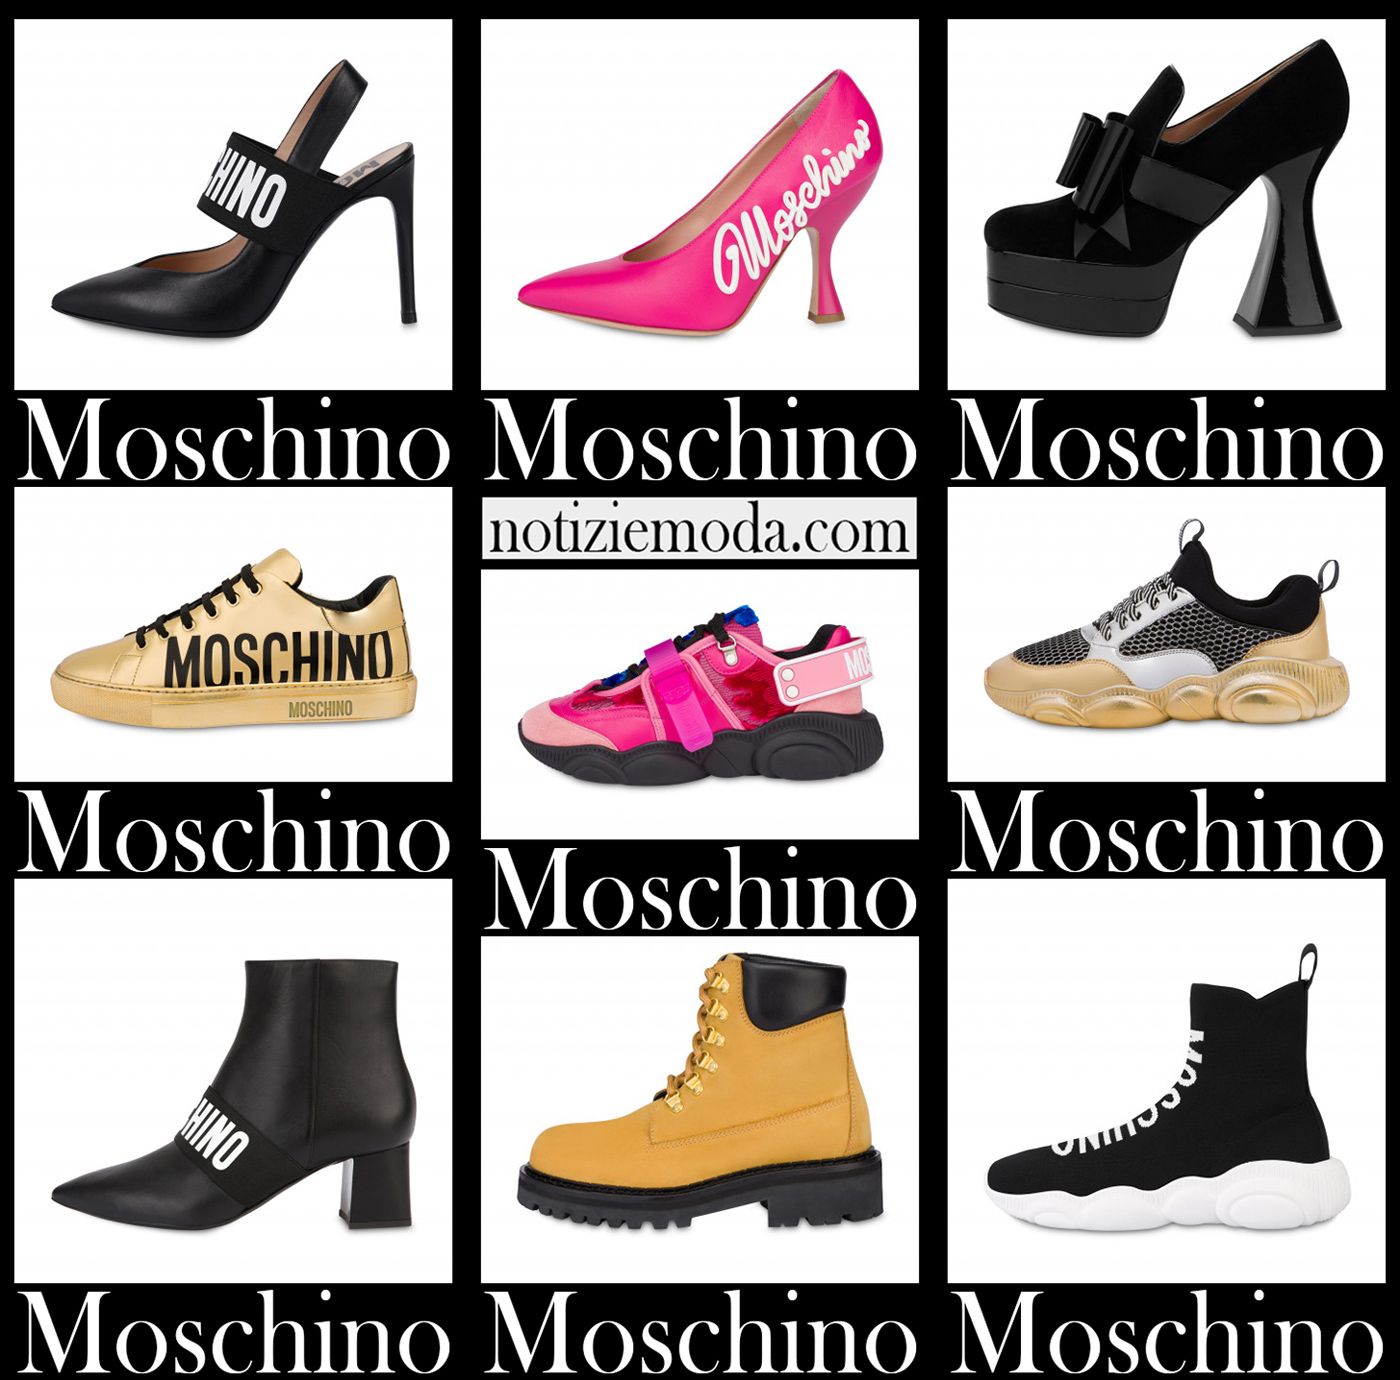 Nuovi arrivi scarpe Moschino 2021 calzature moda donna